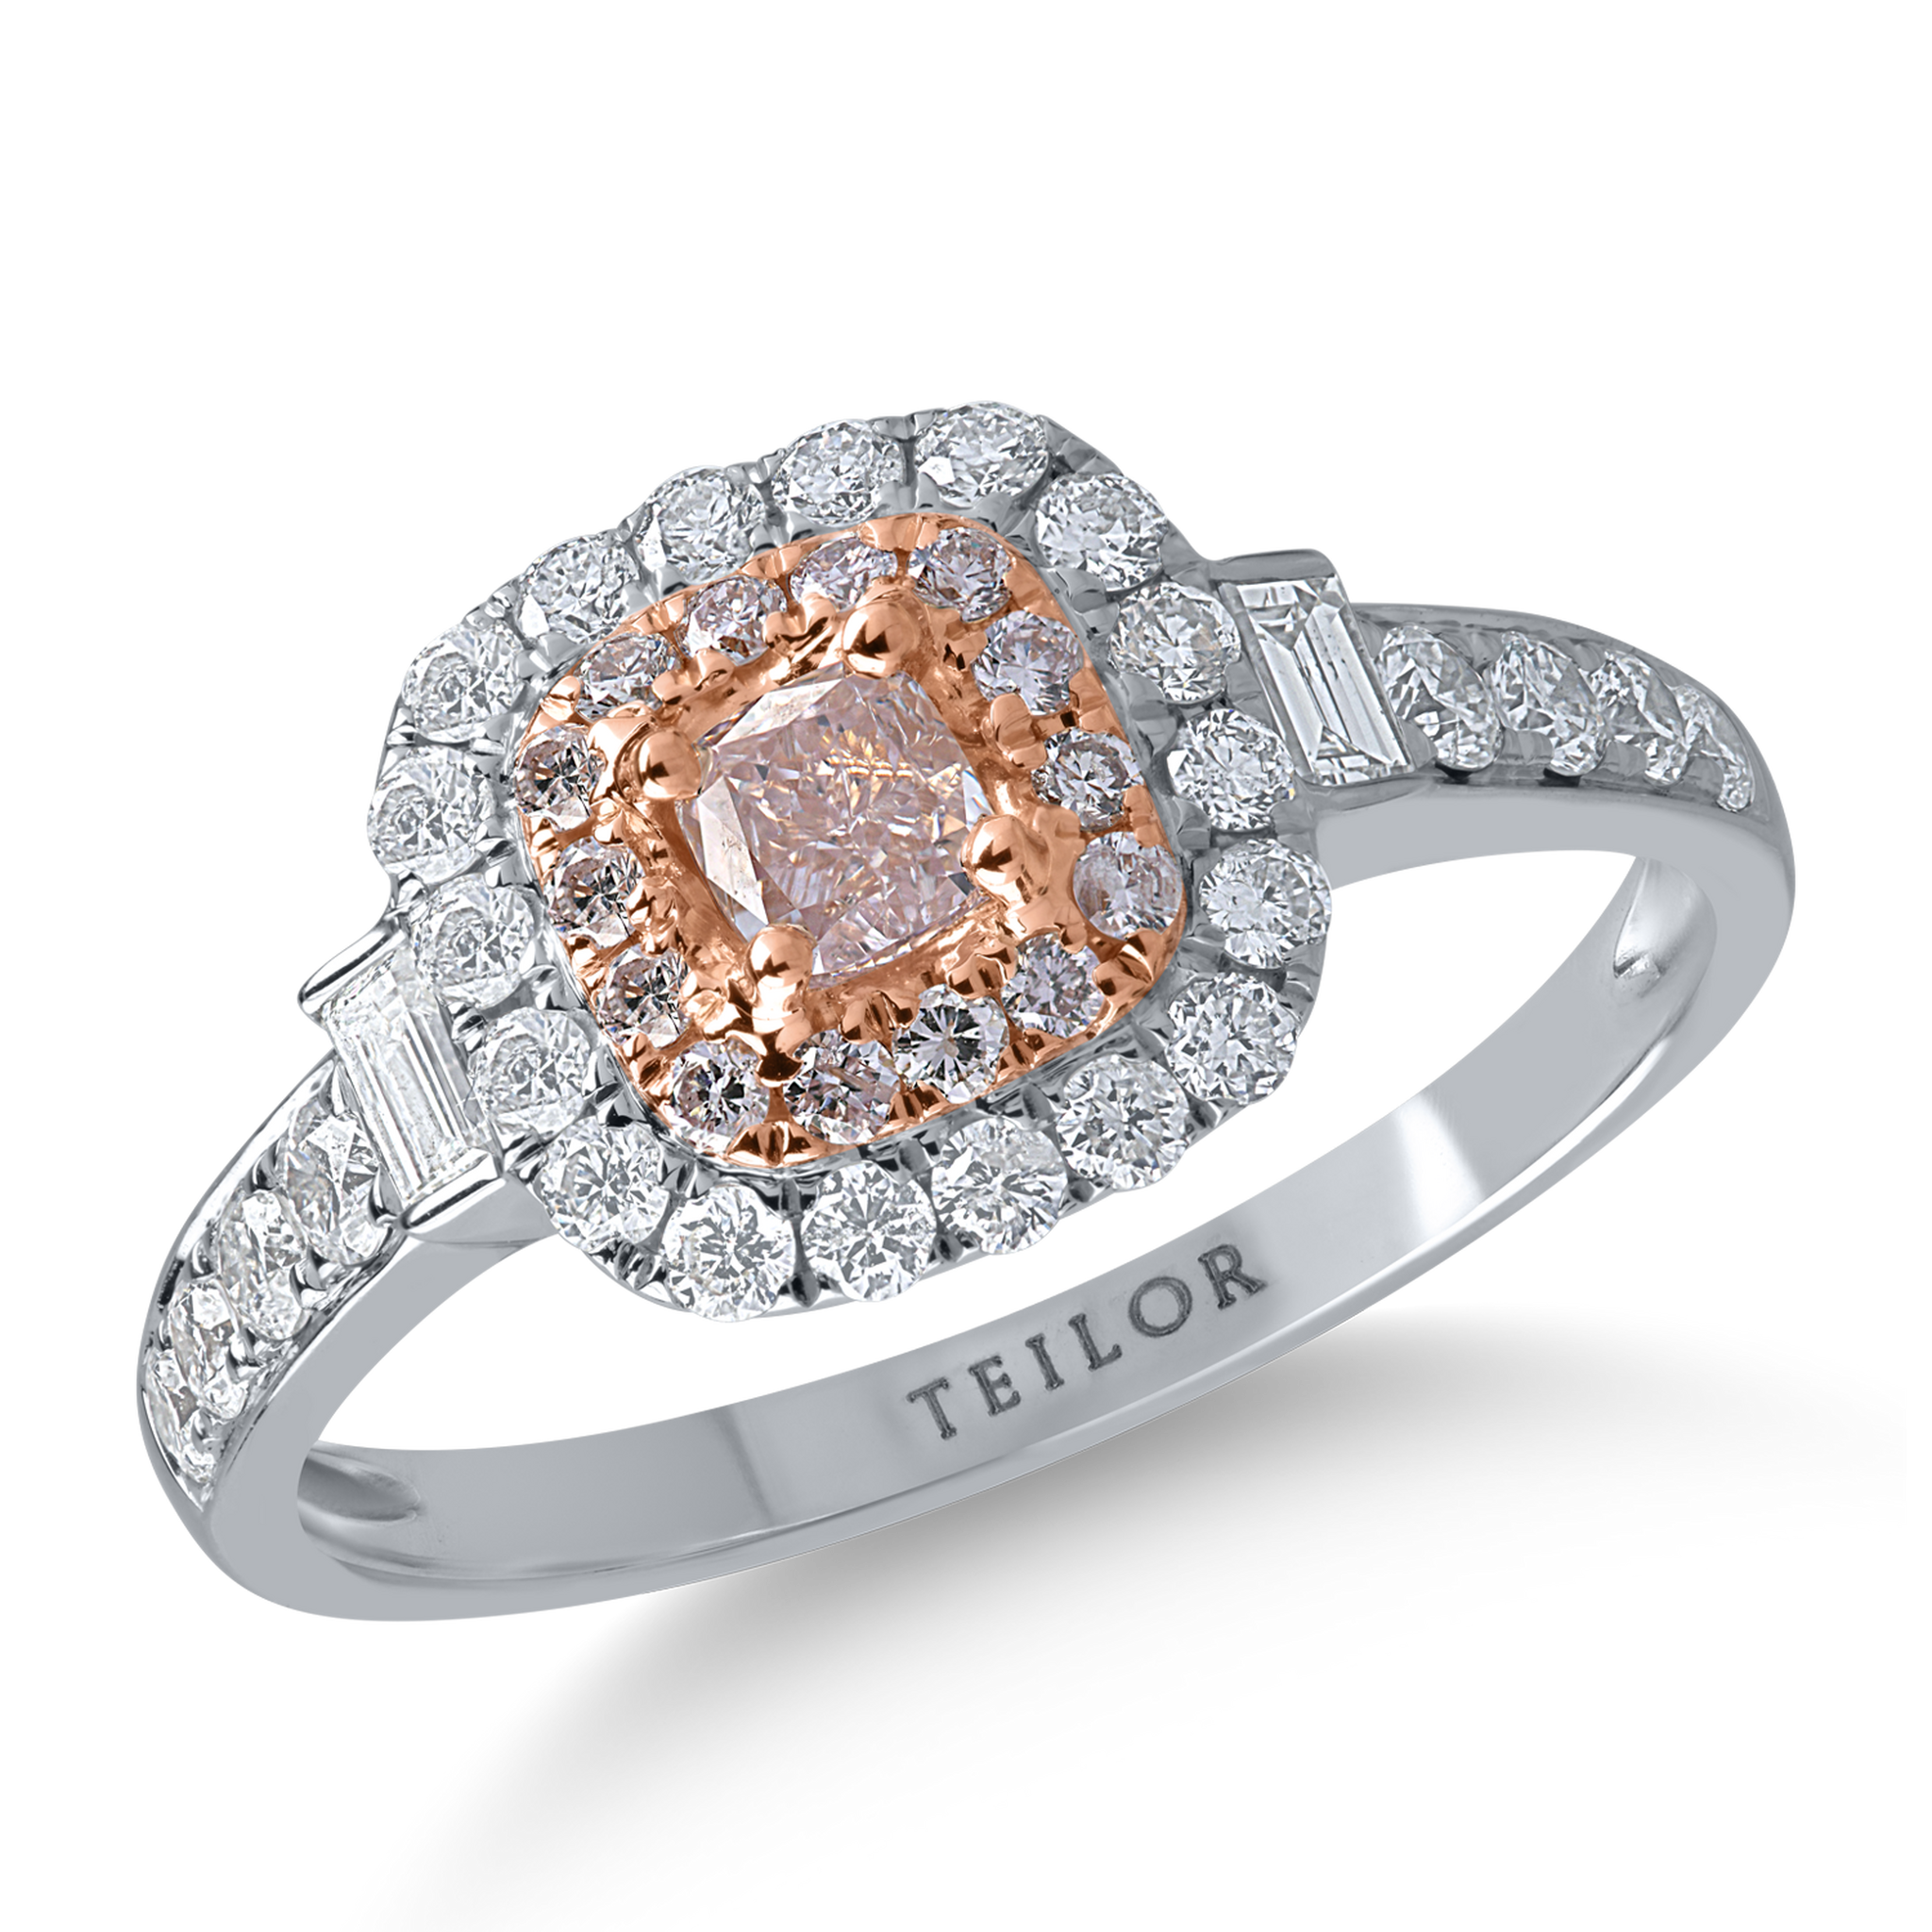 Pierścionek z białego różowego złota z bezbarwnymi diamentami o masie 0.6ct i różowymi diamentami o masie 0.38ct